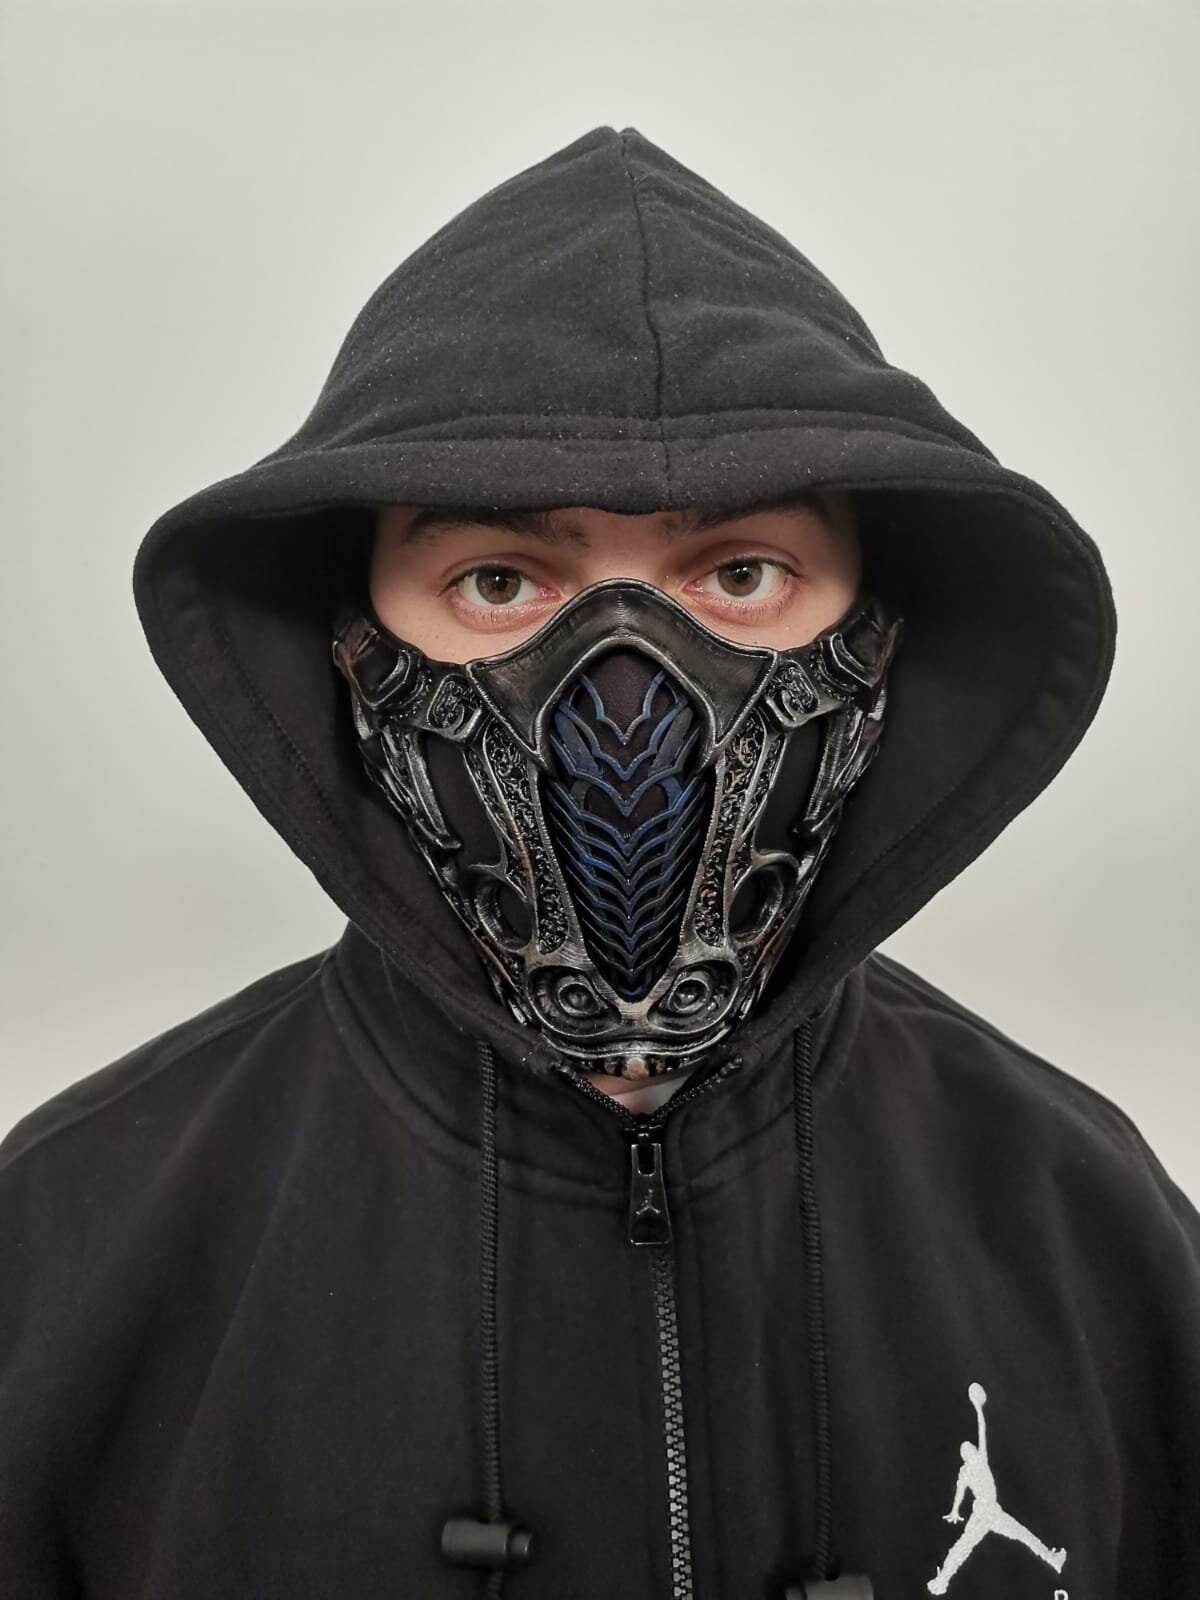 Sub-zero Mask Mortal Kombat 2021 Movie | Etsy